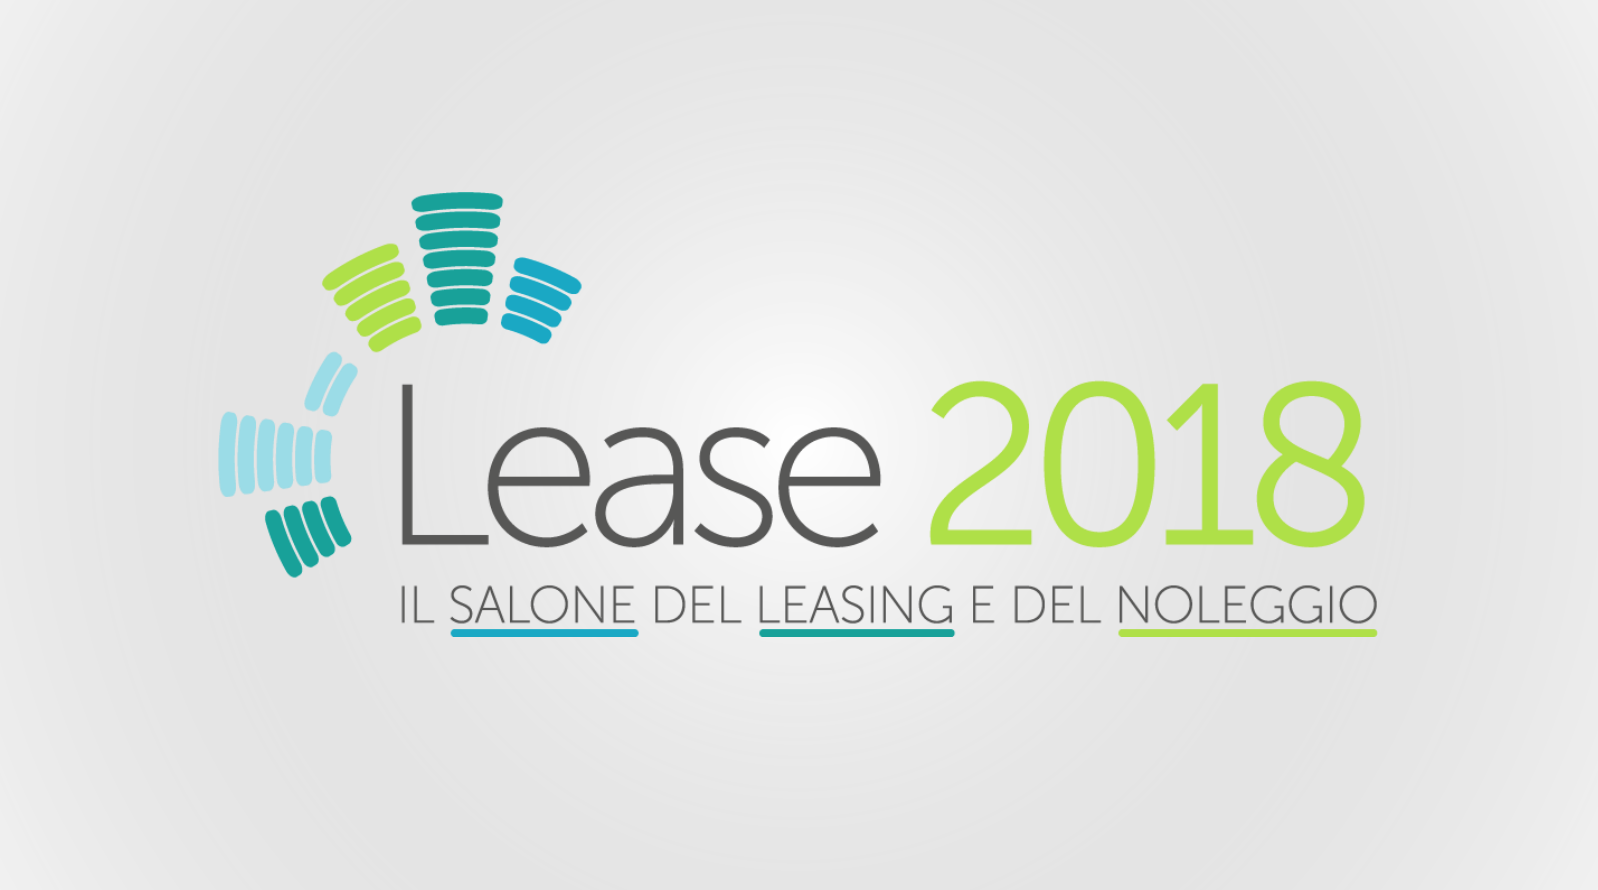 Lease 2018: arriva a Milano il primo salone del leasing e del noleggio